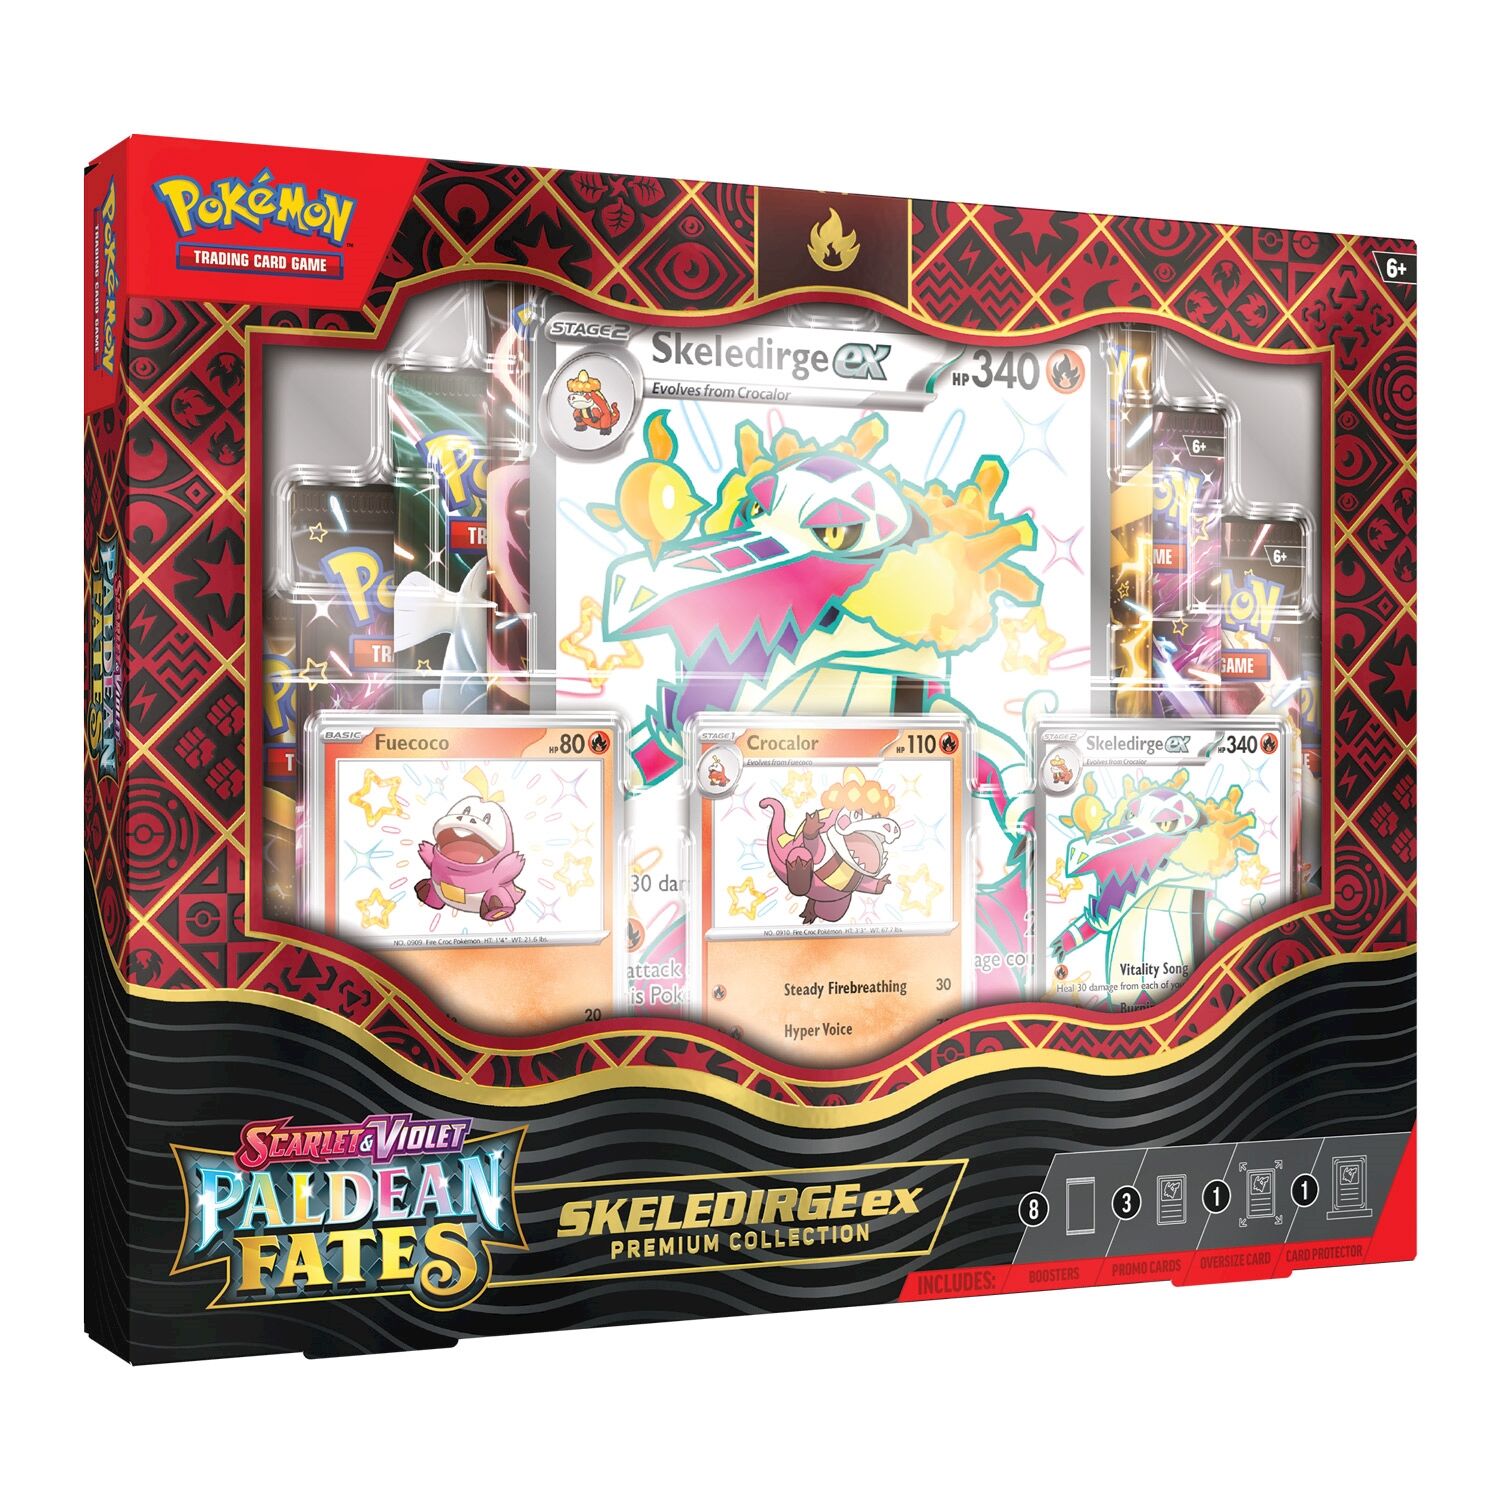 Paldean Fates Skeledirge ex Premium Collection - EN